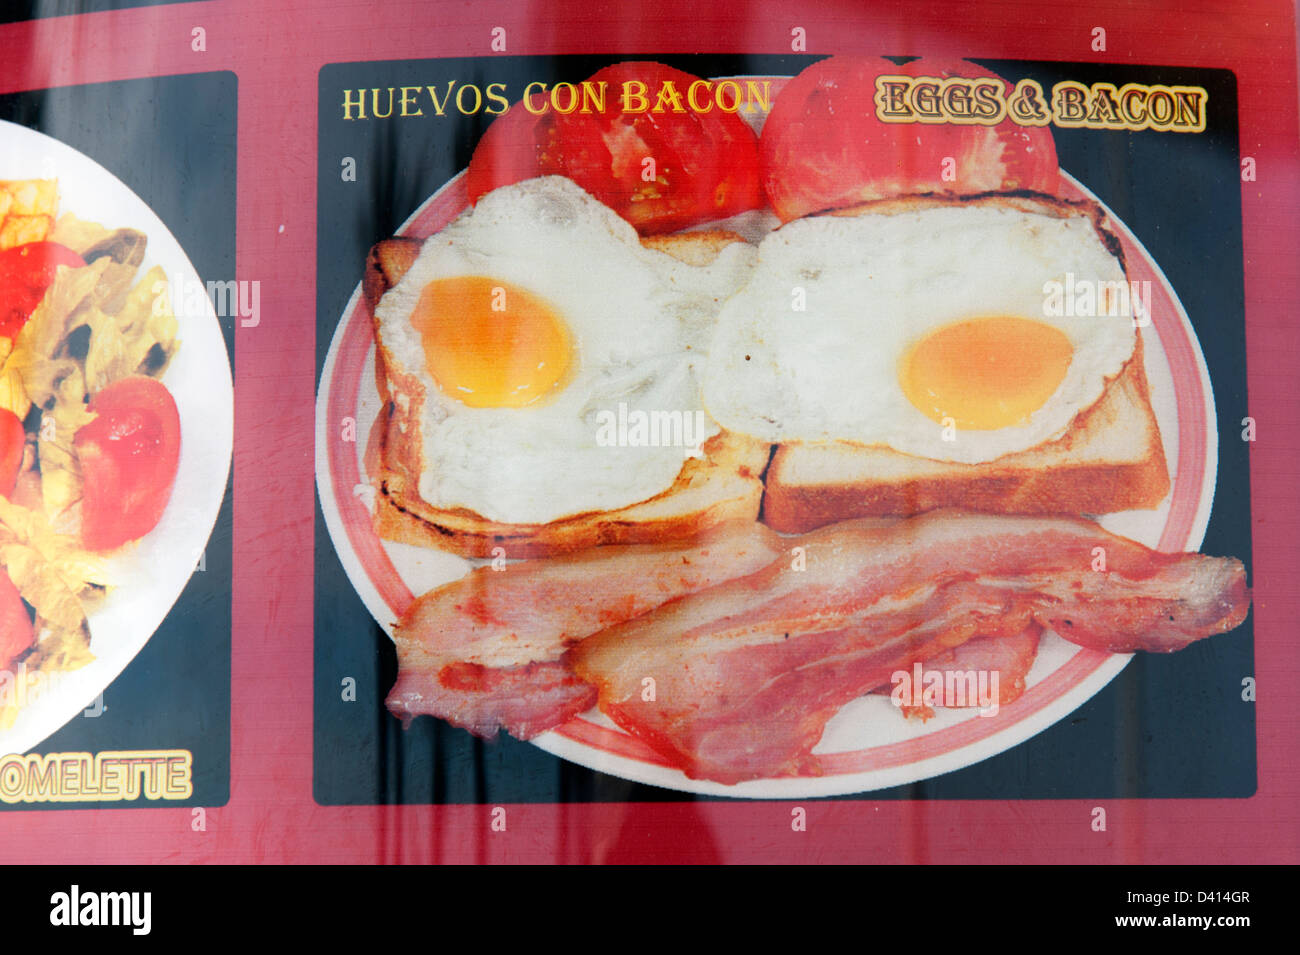 Englisches Essen Speck und Eier abgebildet auf Café-Menü, Benidorm, Costa Blanca, Spanien Stockfoto